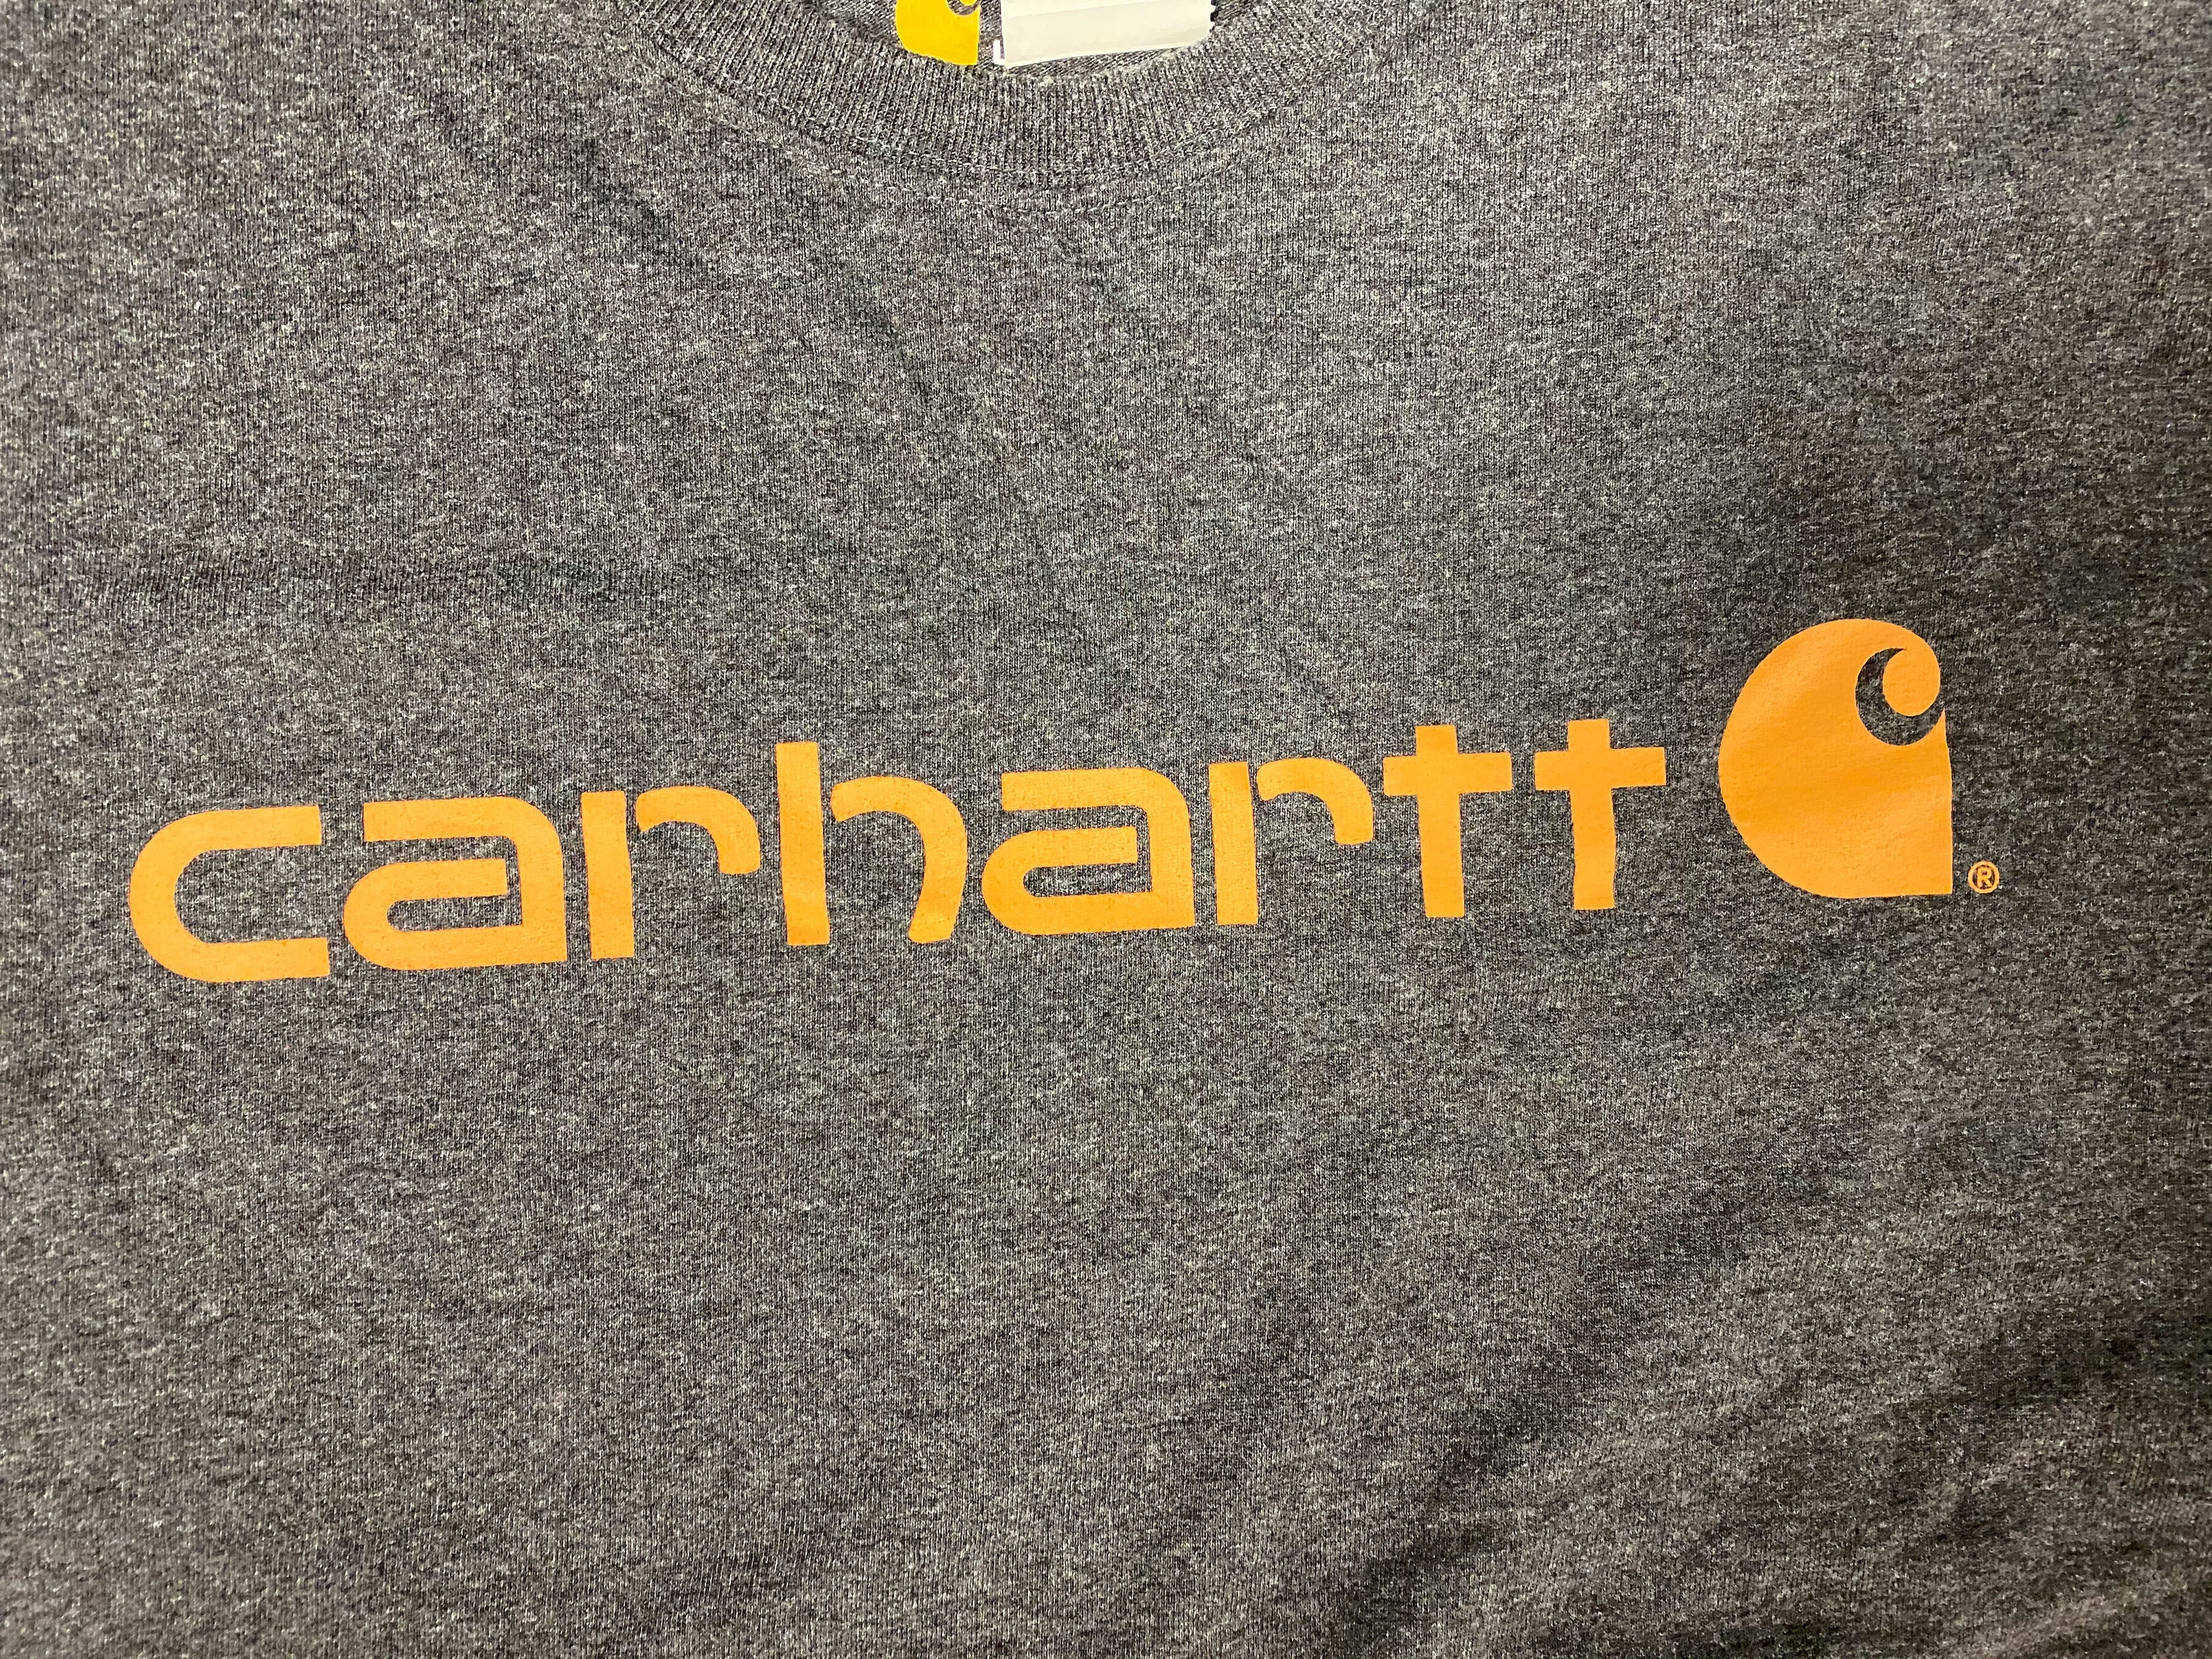 Carhatt Logo Tee - Charcoal